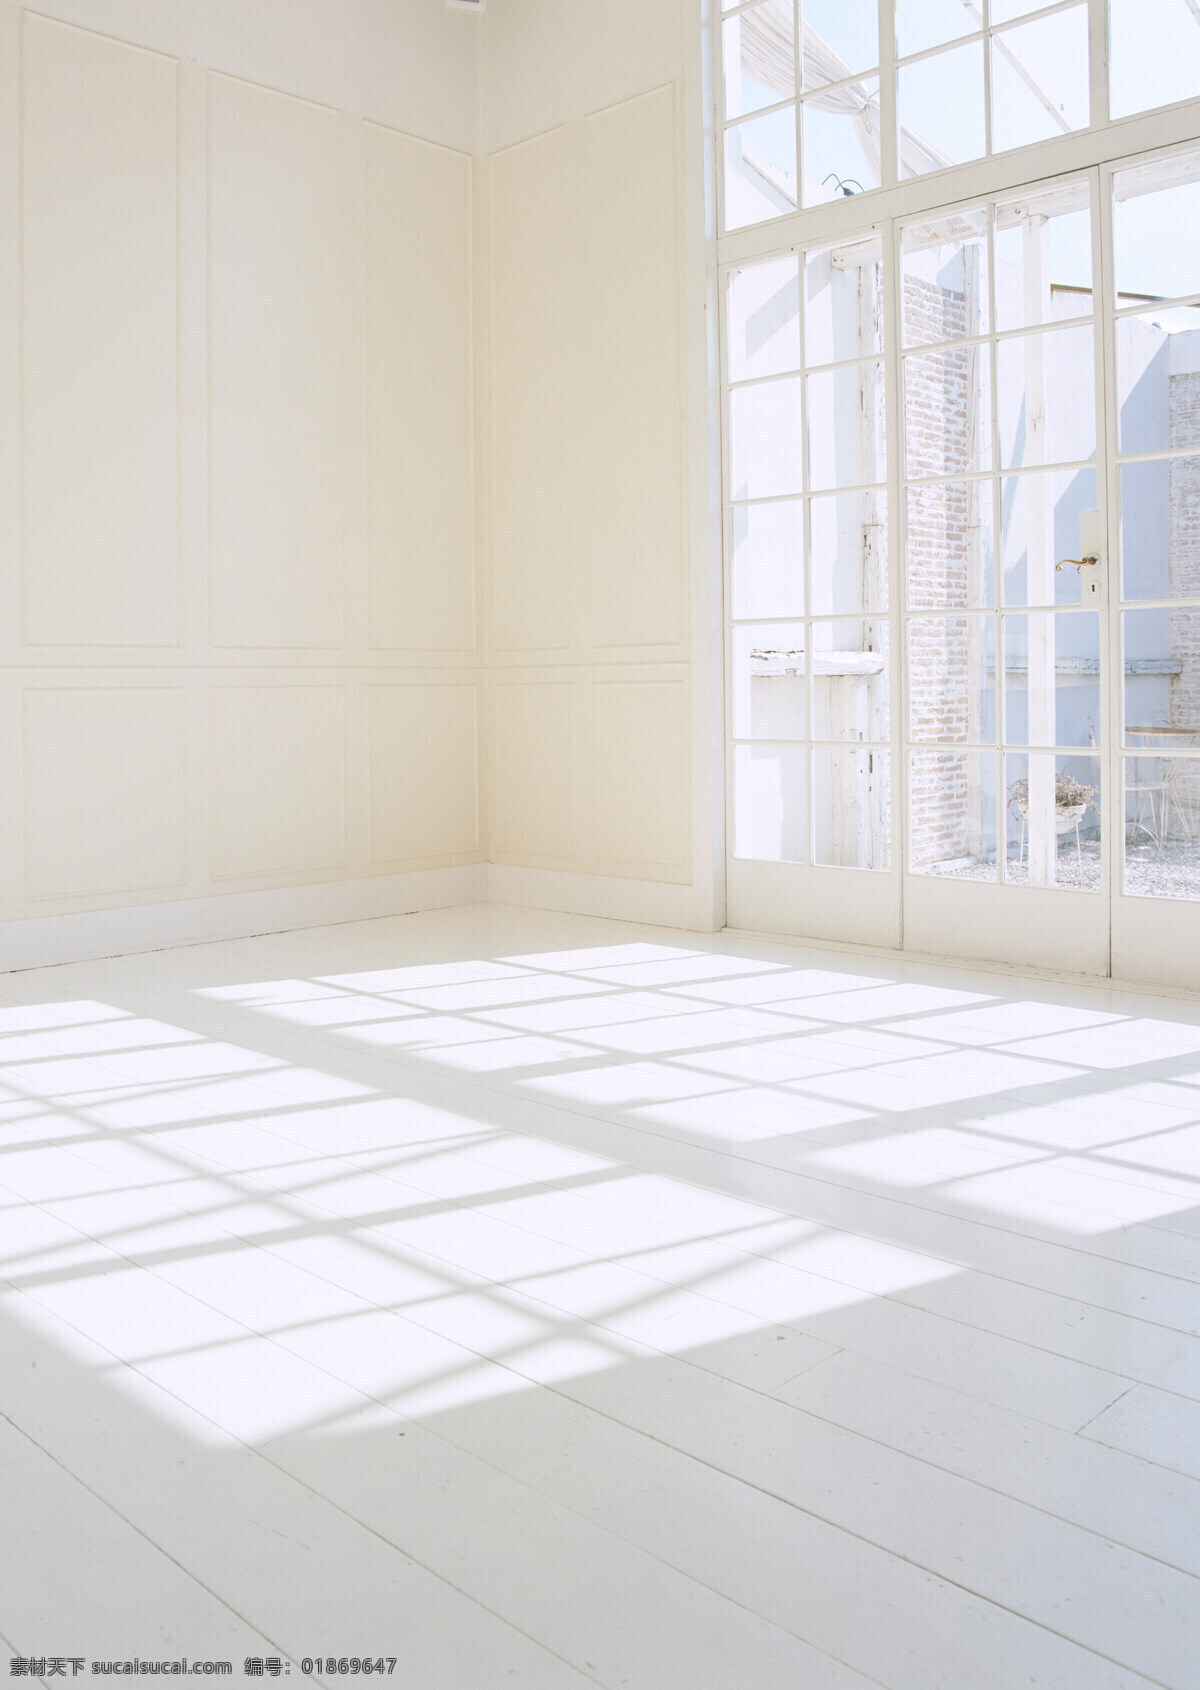 光线下的房屋 自然光 白色室内 摄影背景 白色窗纱 影楼背景 室内景观 室内摄影 建筑园林